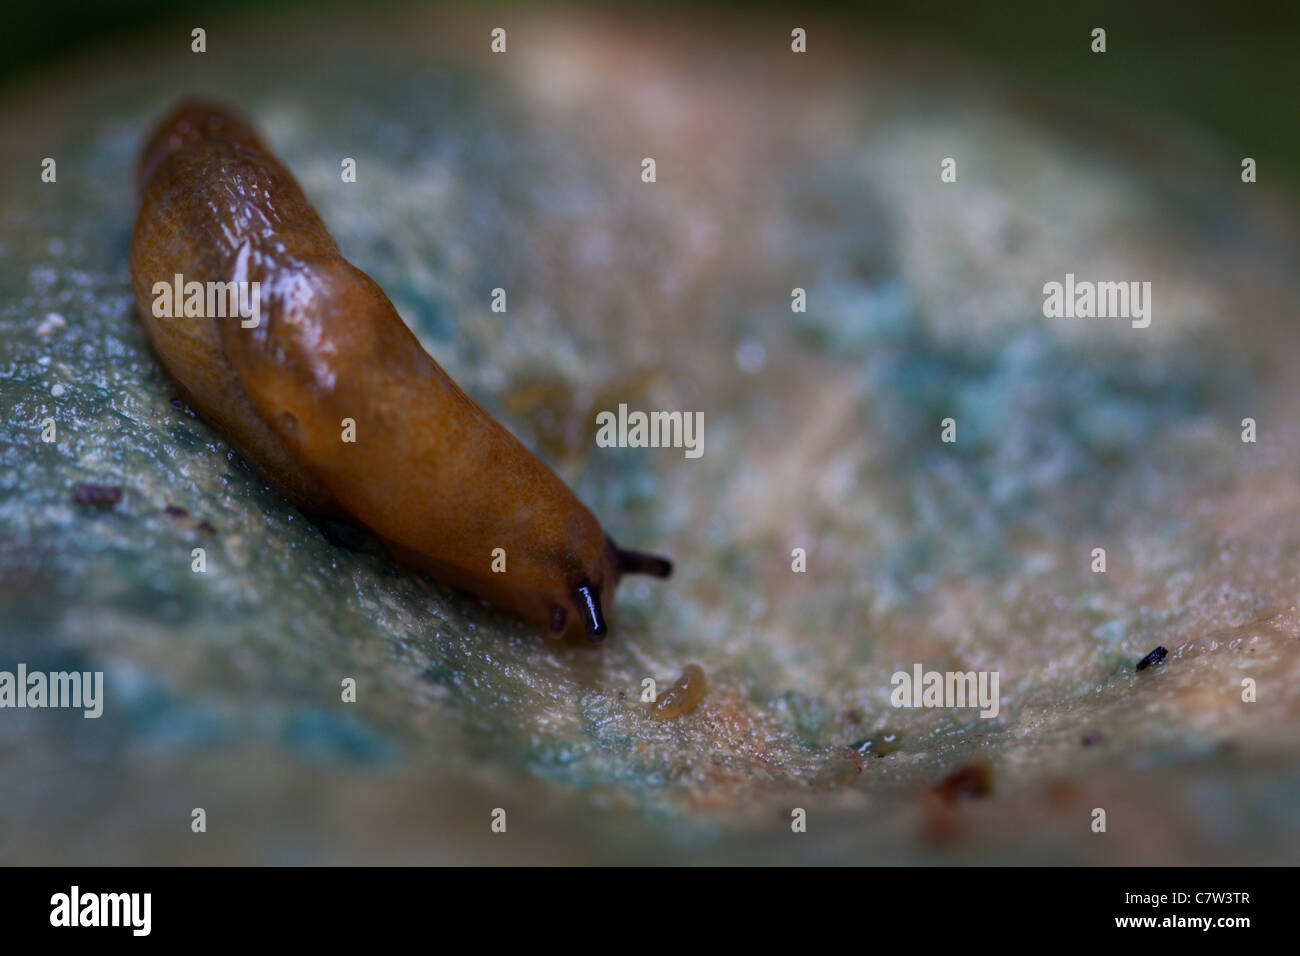 Slug marrone su un fungo Foto Stock